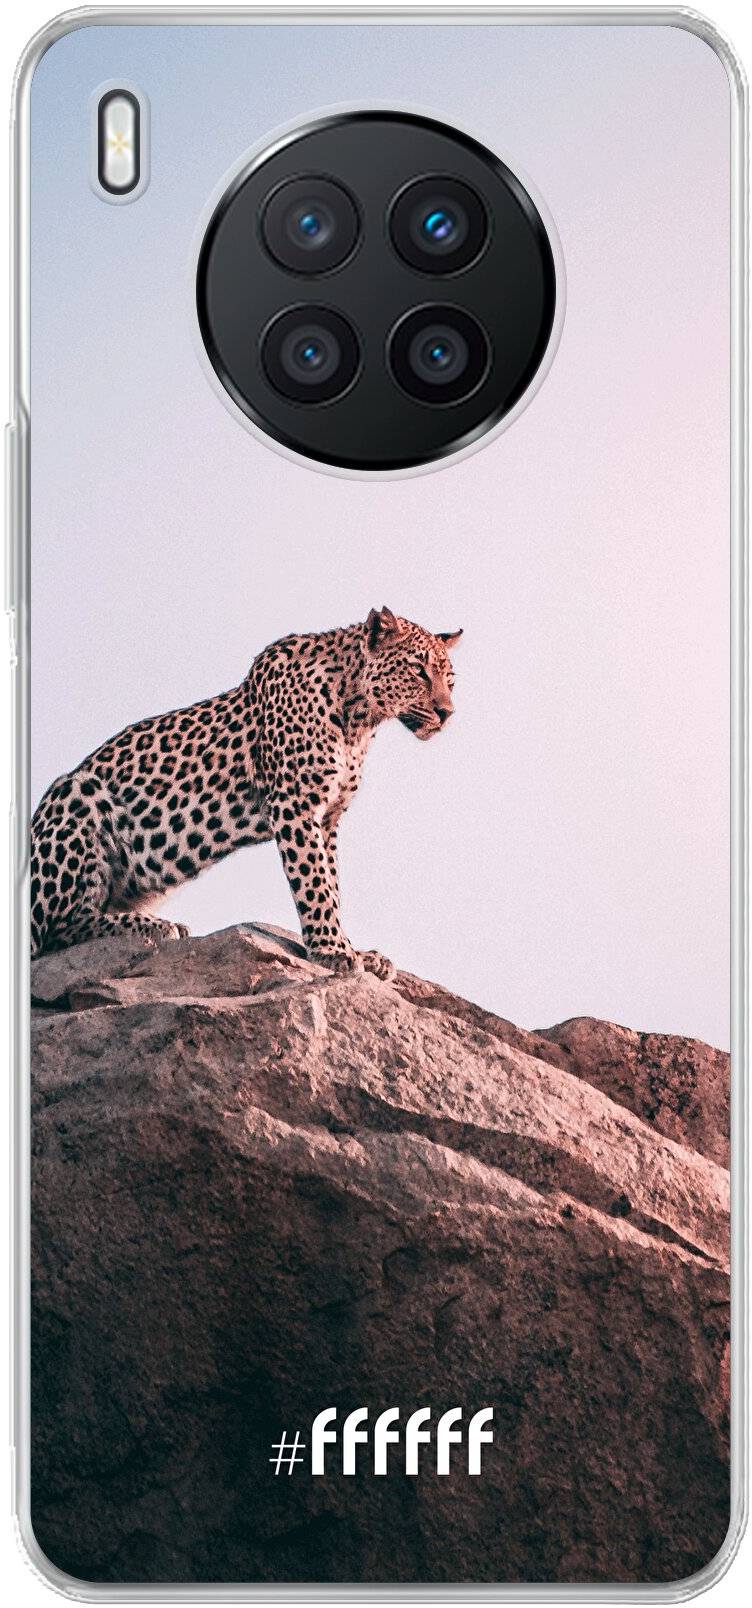 Leopard Nova 8i